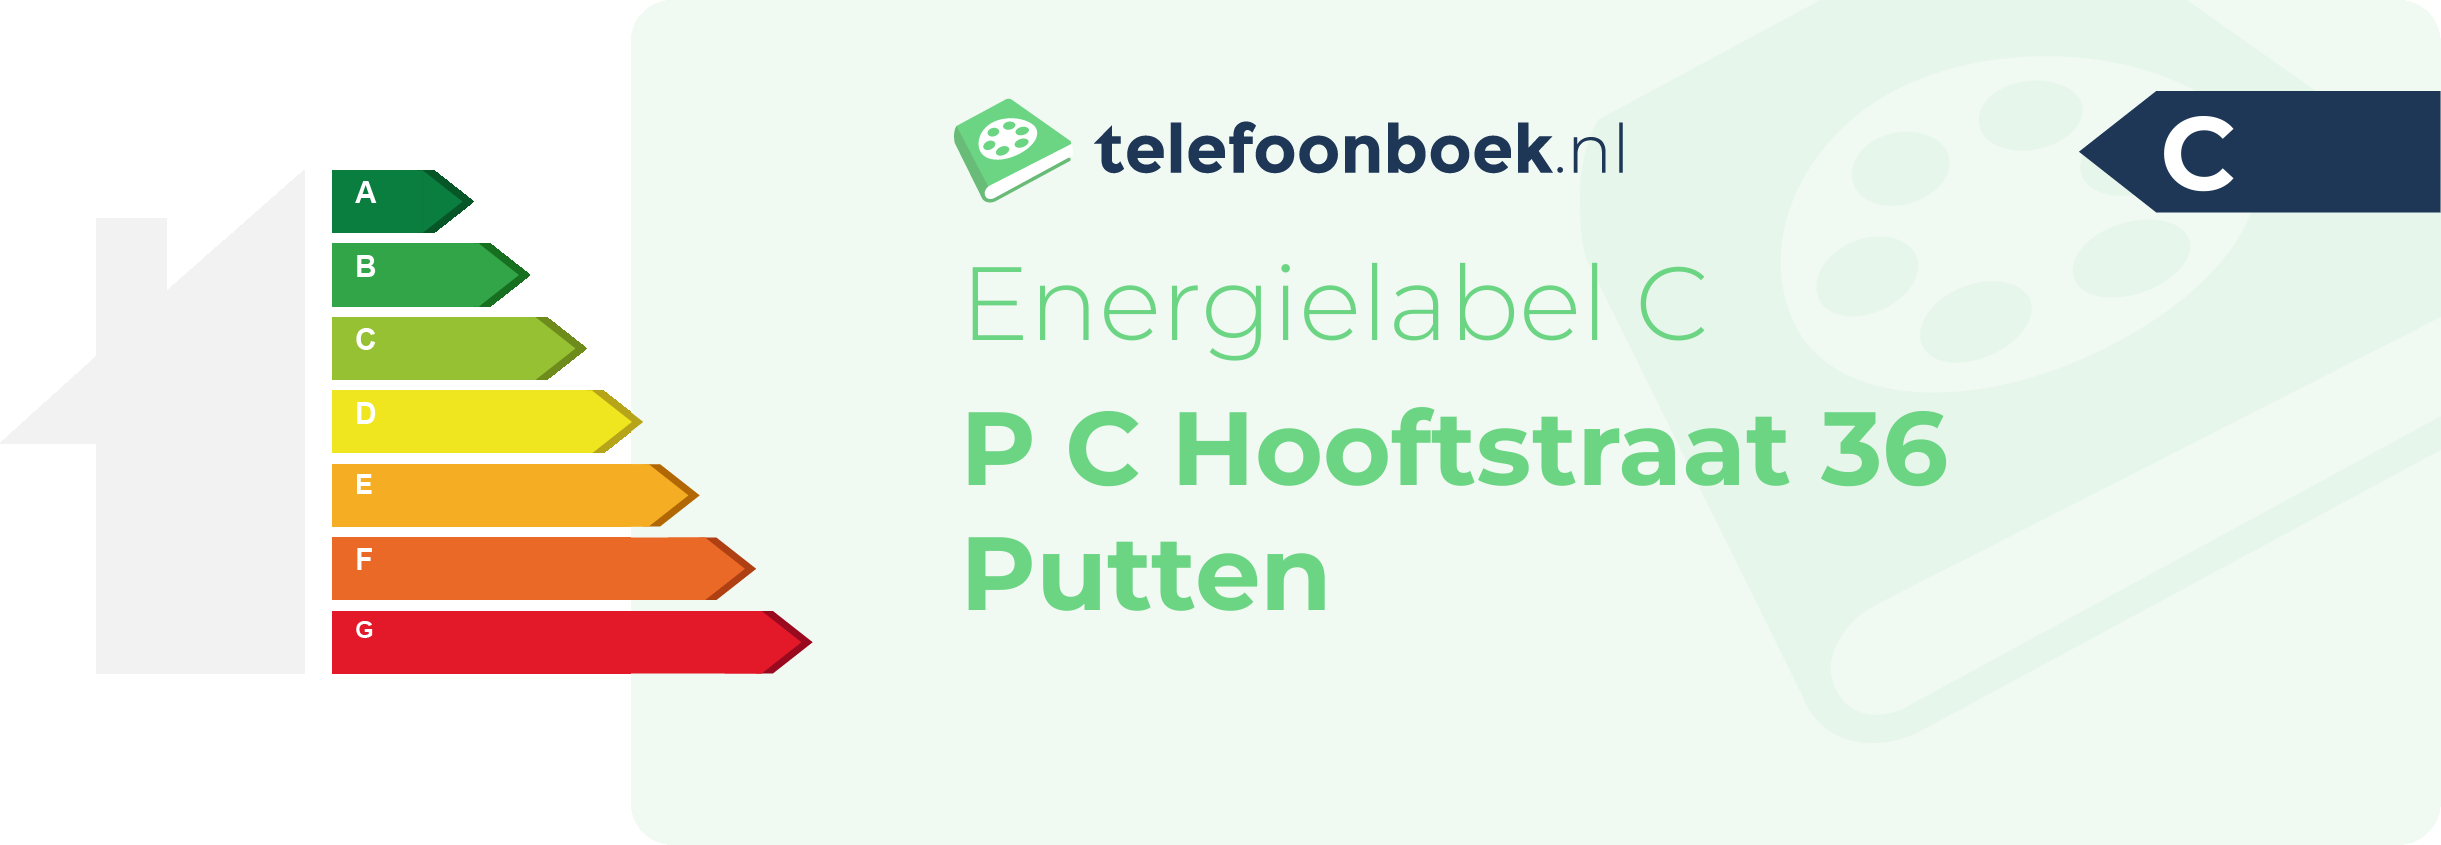 Energielabel P C Hooftstraat 36 Putten